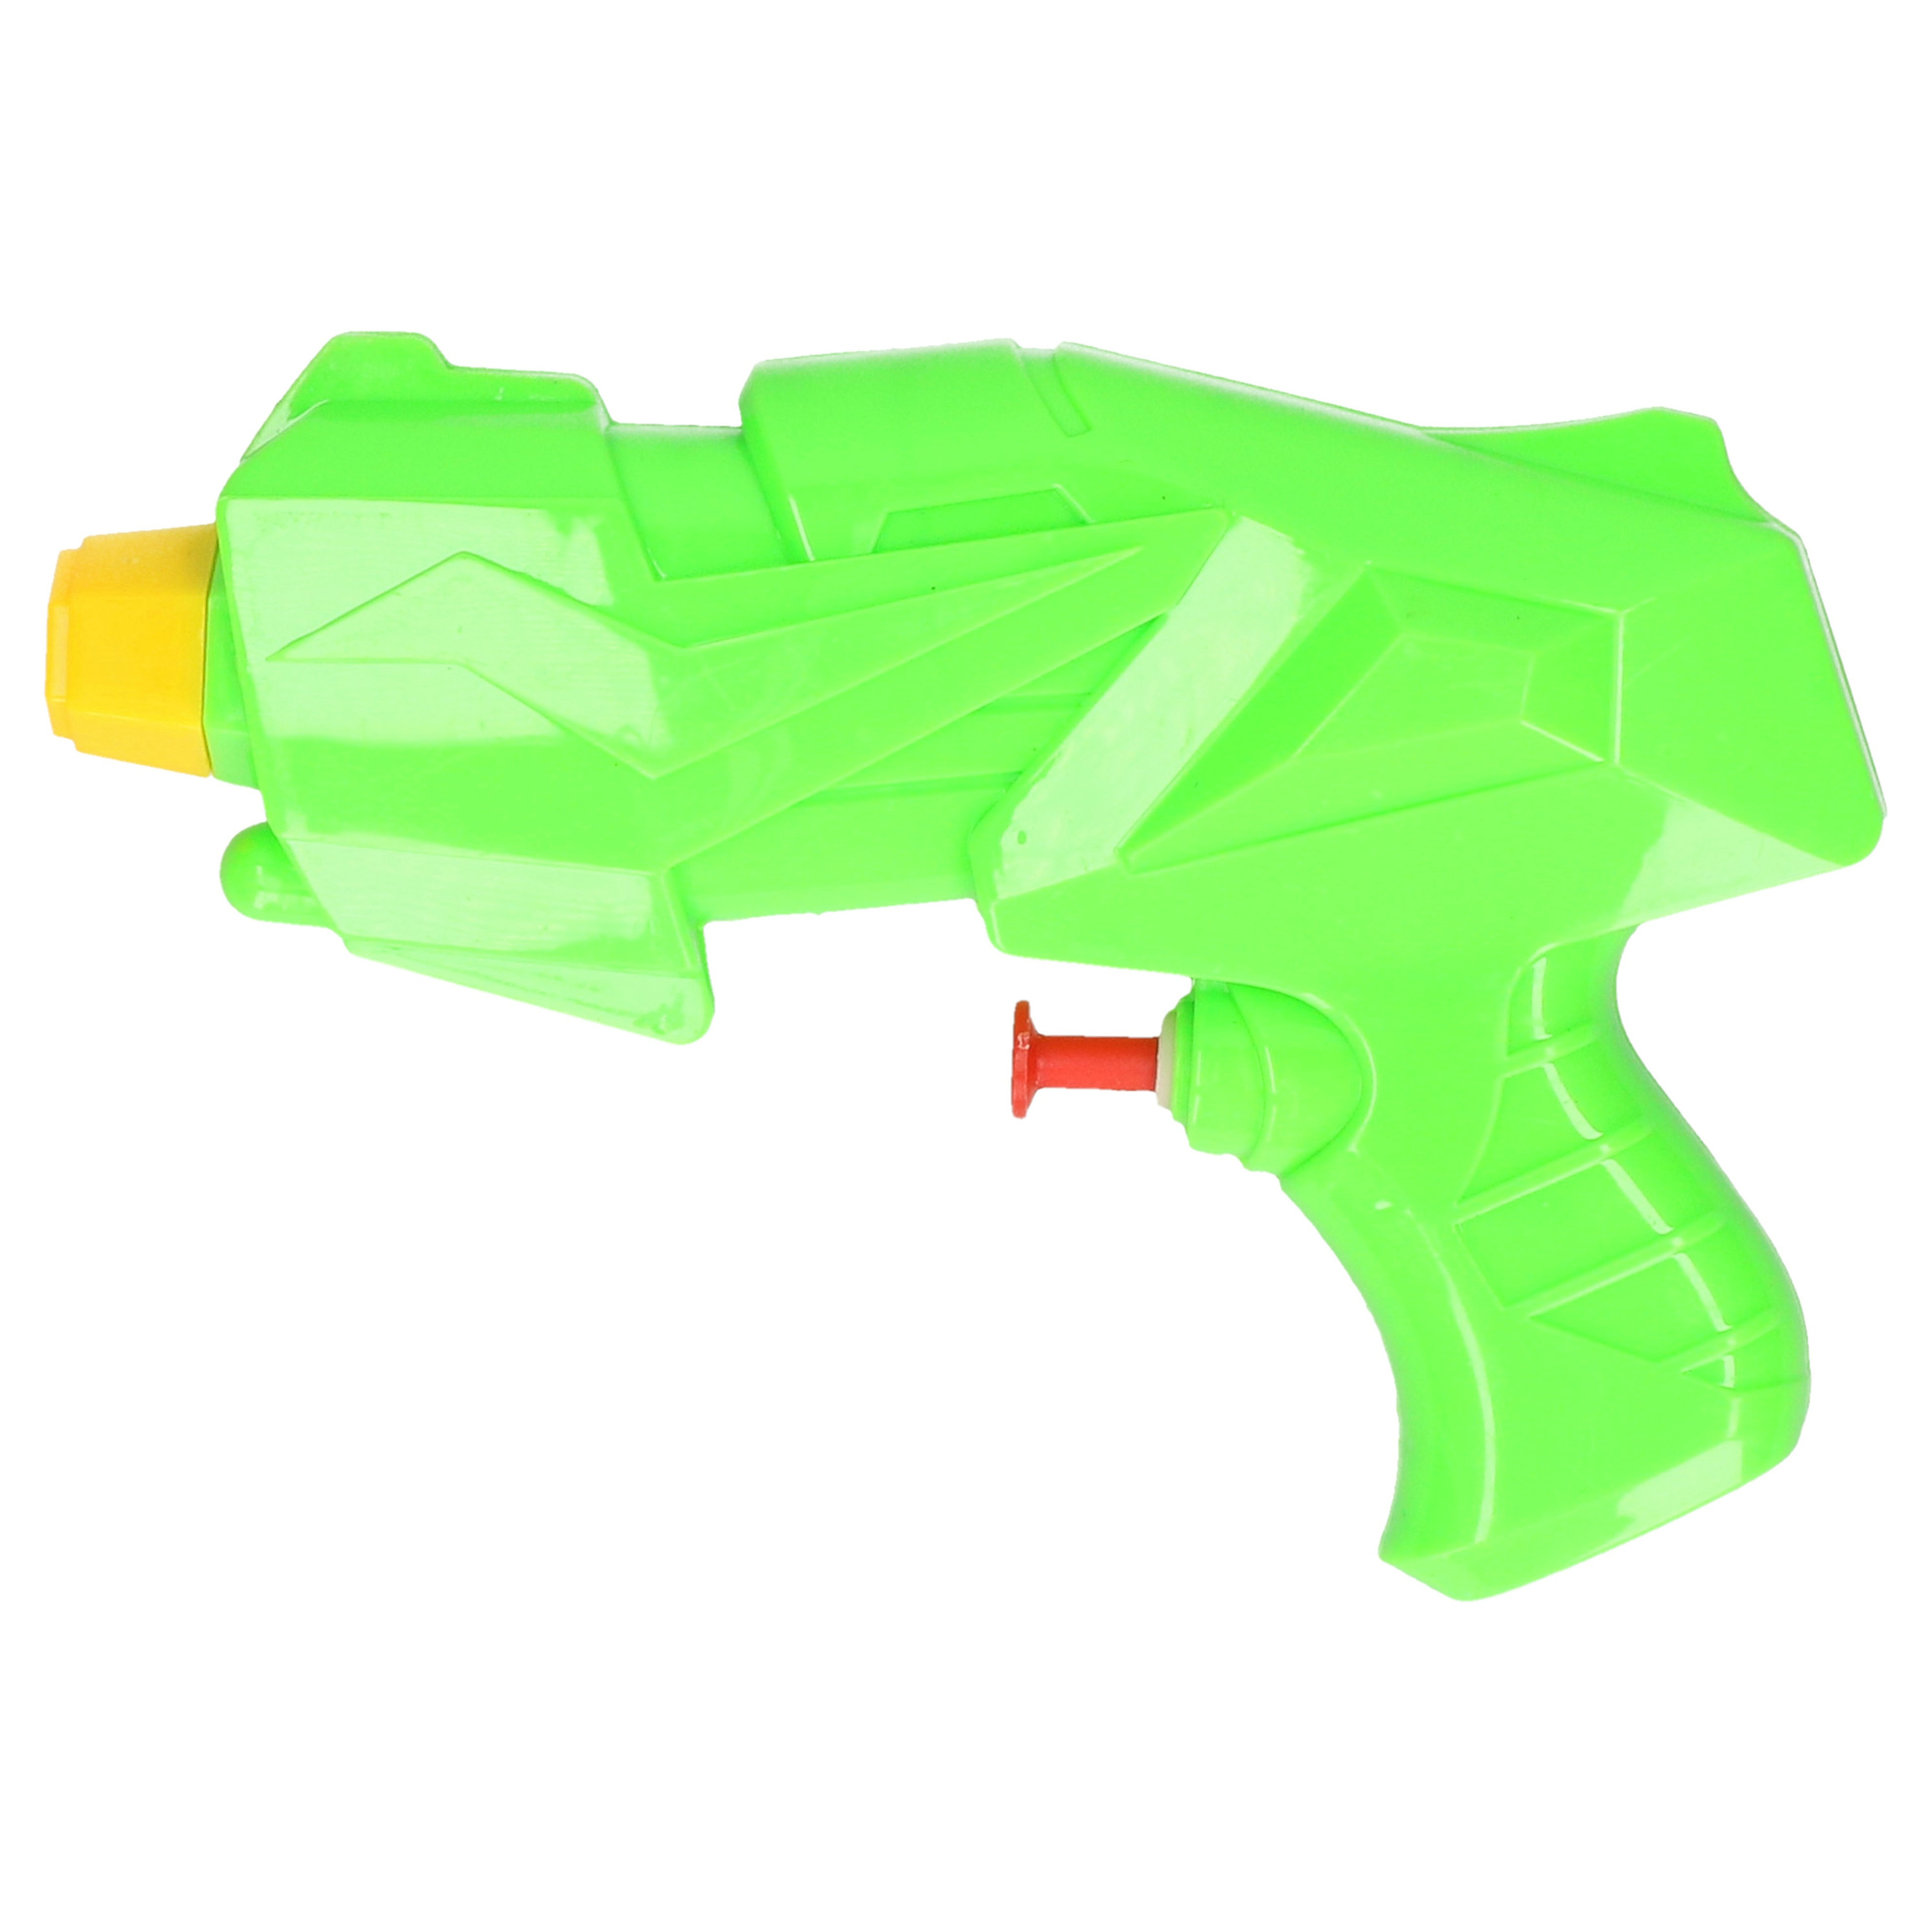 1x Mini waterpistolen/waterpistool groen van 15 cm kinderspeelgoed